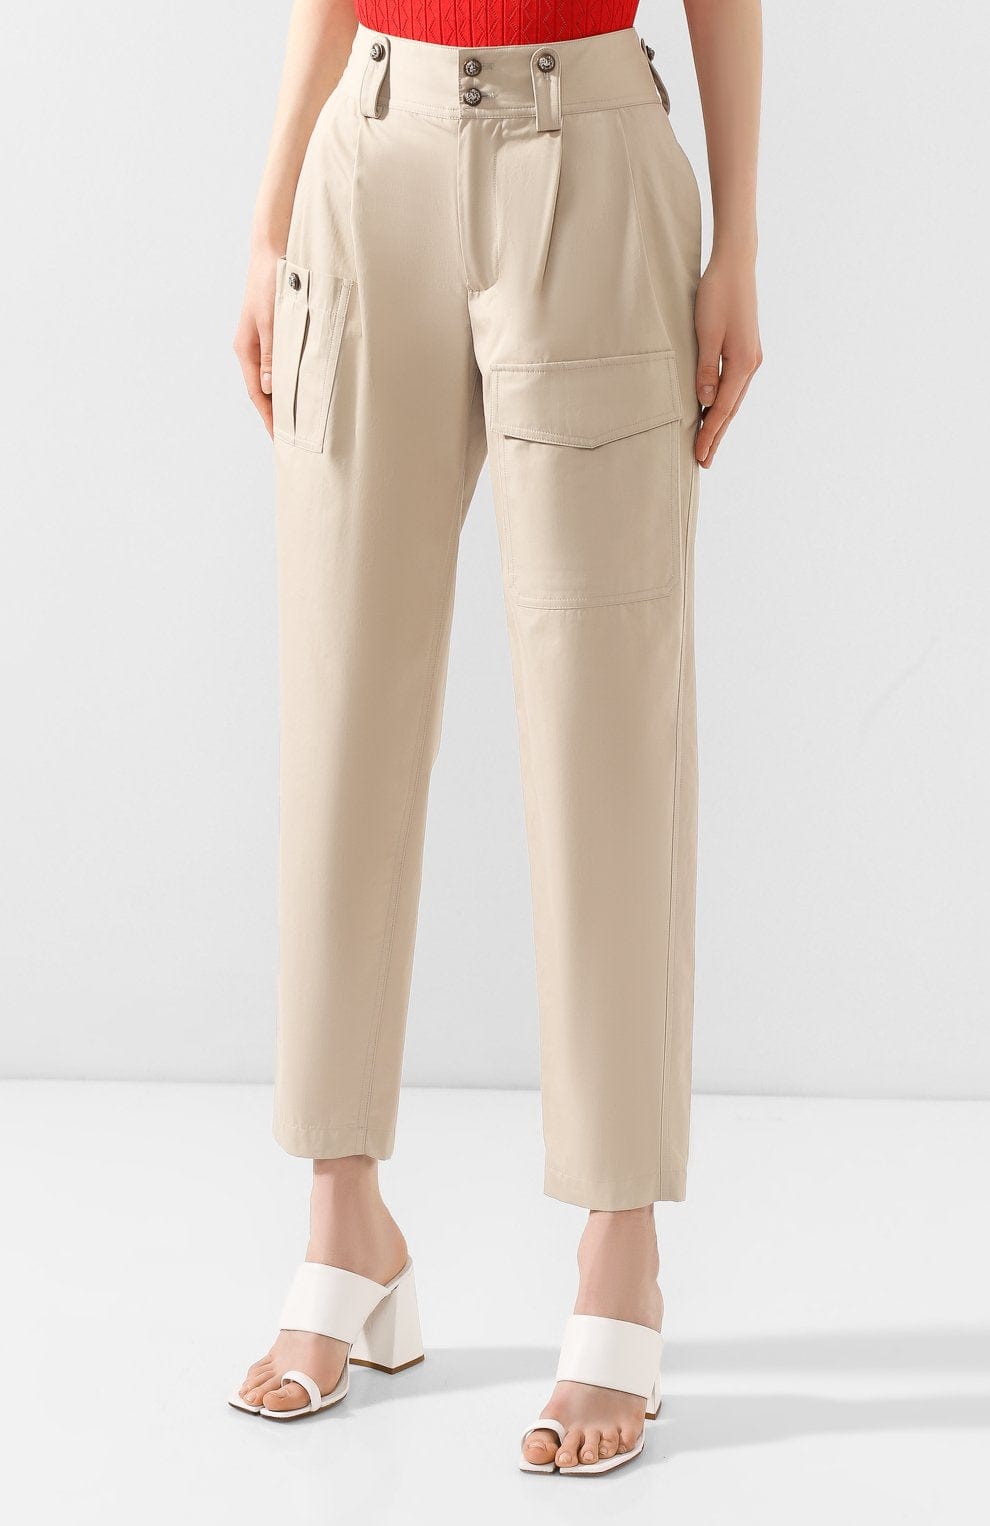 Dolce & Gabbana Safari-Style Pants